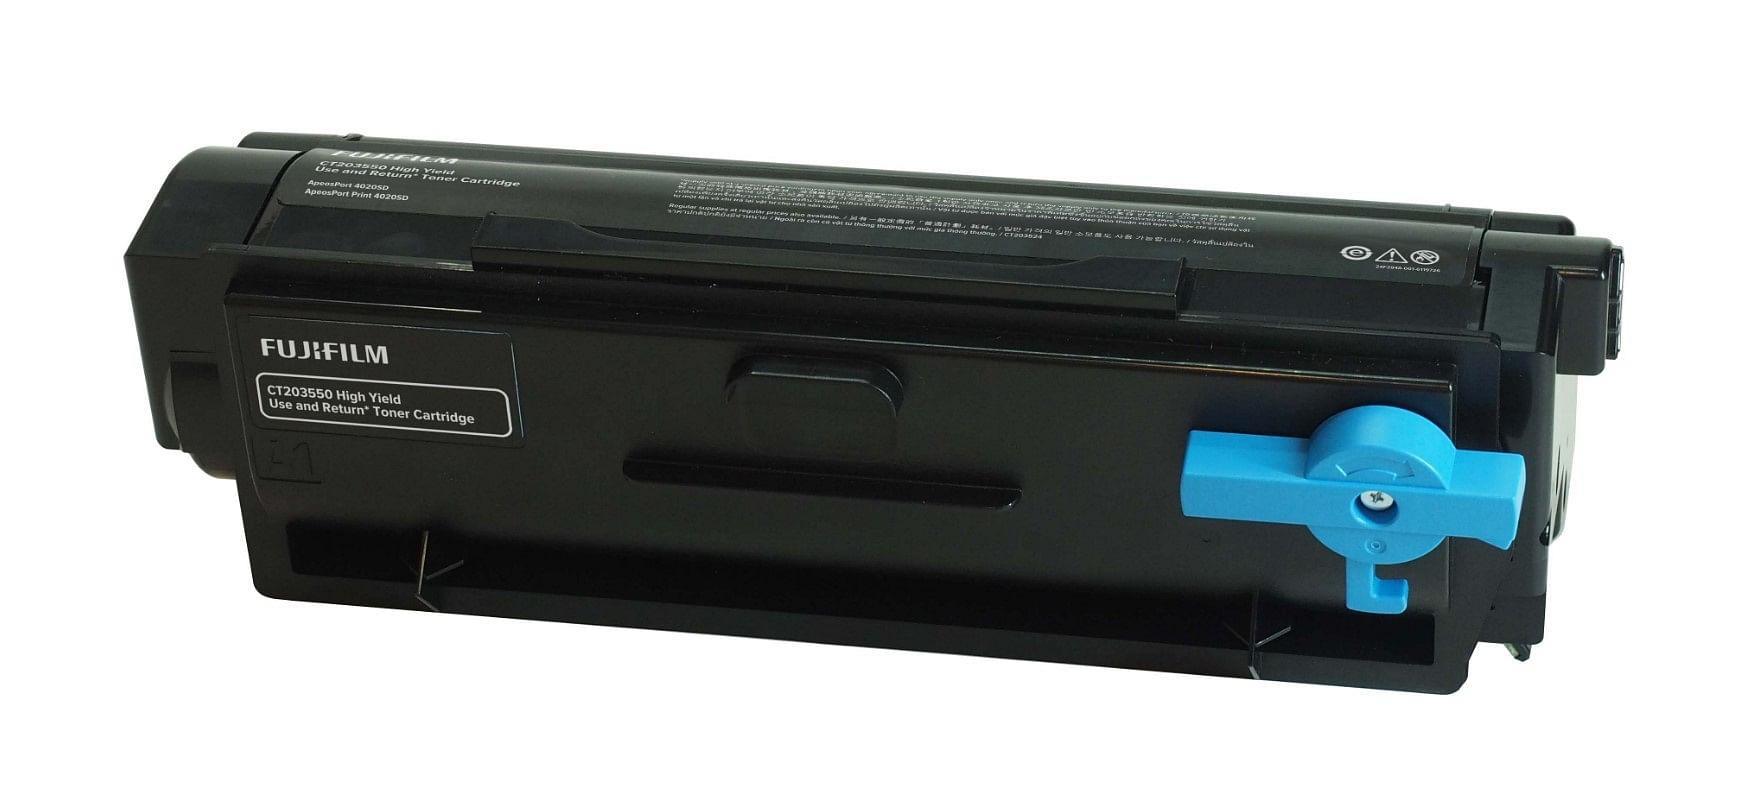 Fujifilm Black Hi Yield Use and Return Toner Cartridge 6K [CT203550]